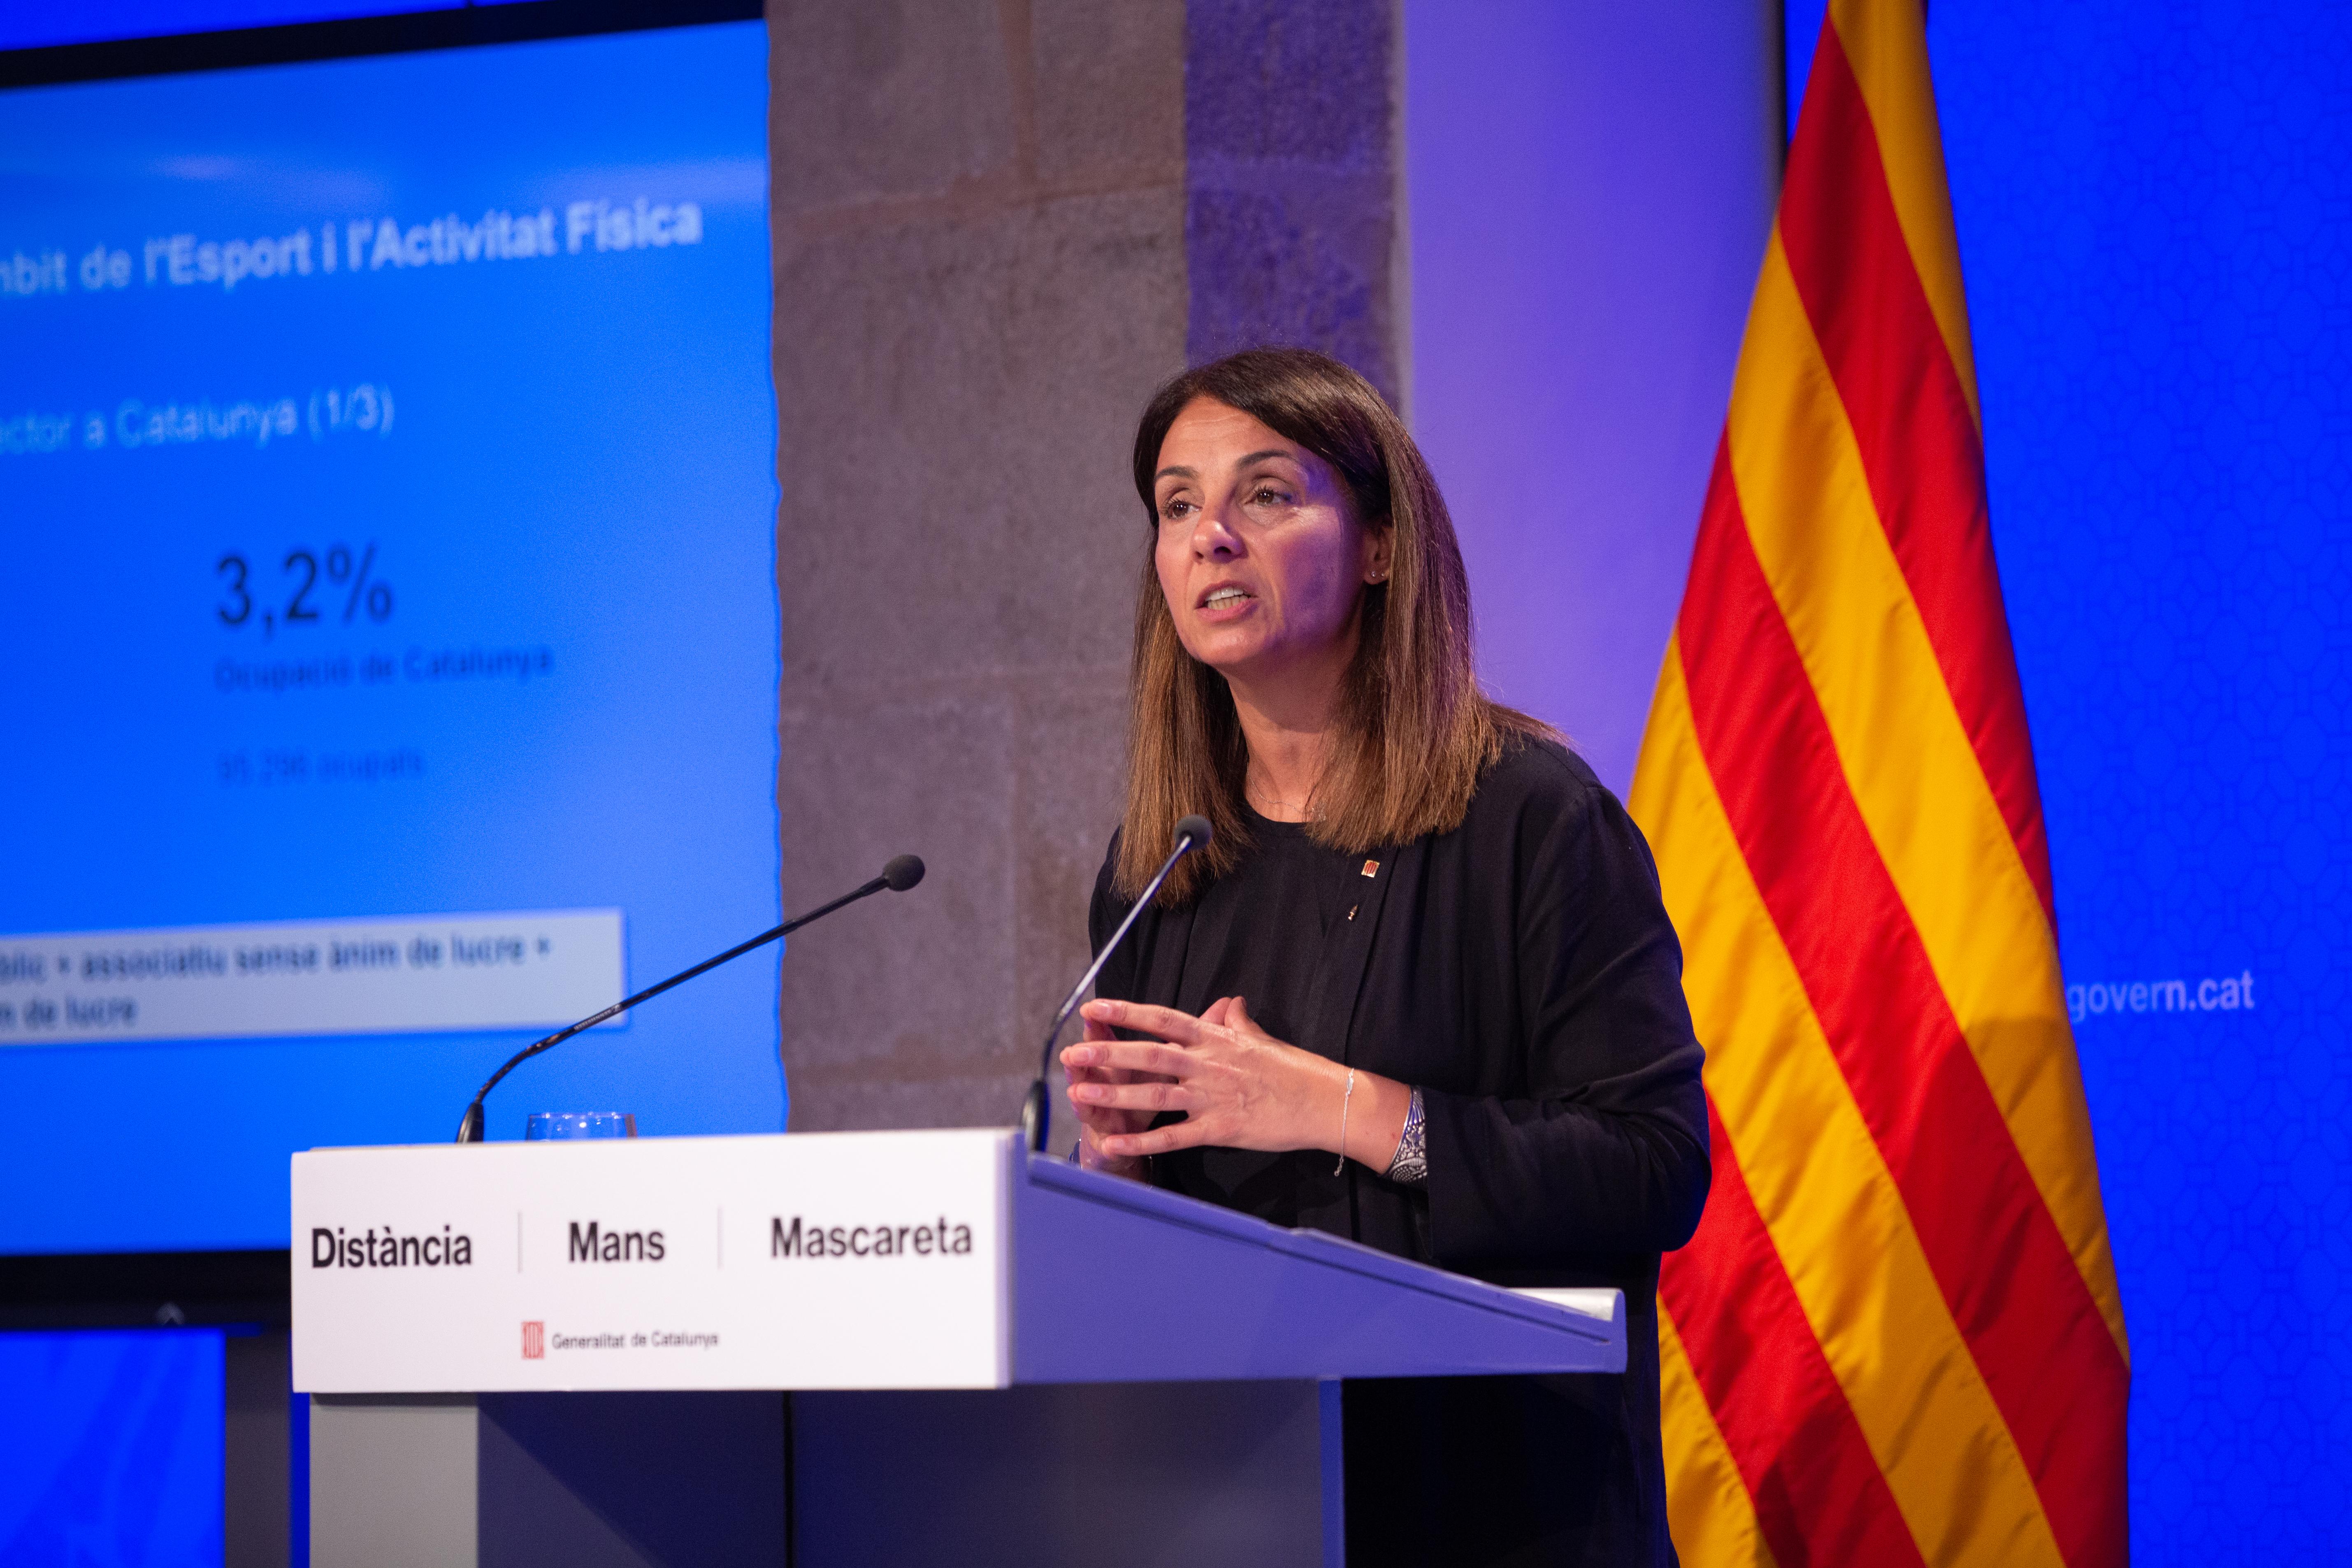 La portavoz de la Generalitat, Meritxell Budó, pide al Gobierno "más responsabilidad y menos frivolidad". EP